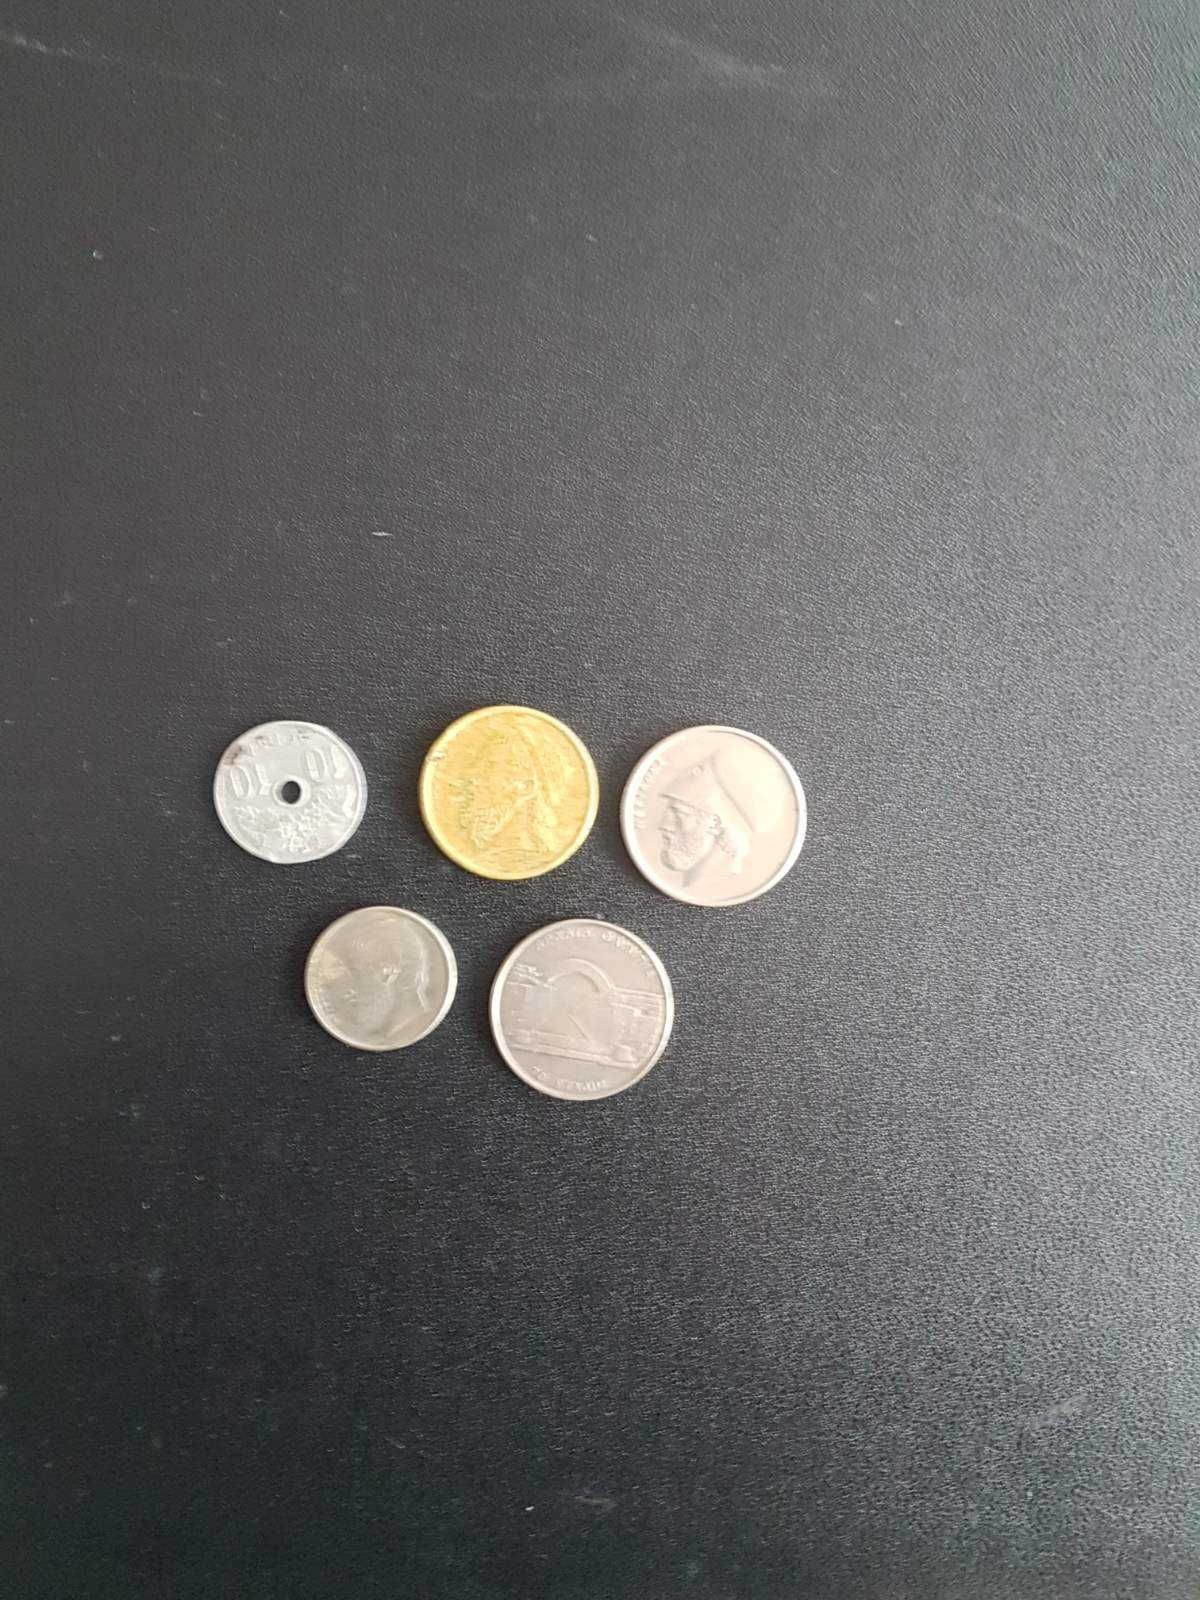 Лот гръцки монети